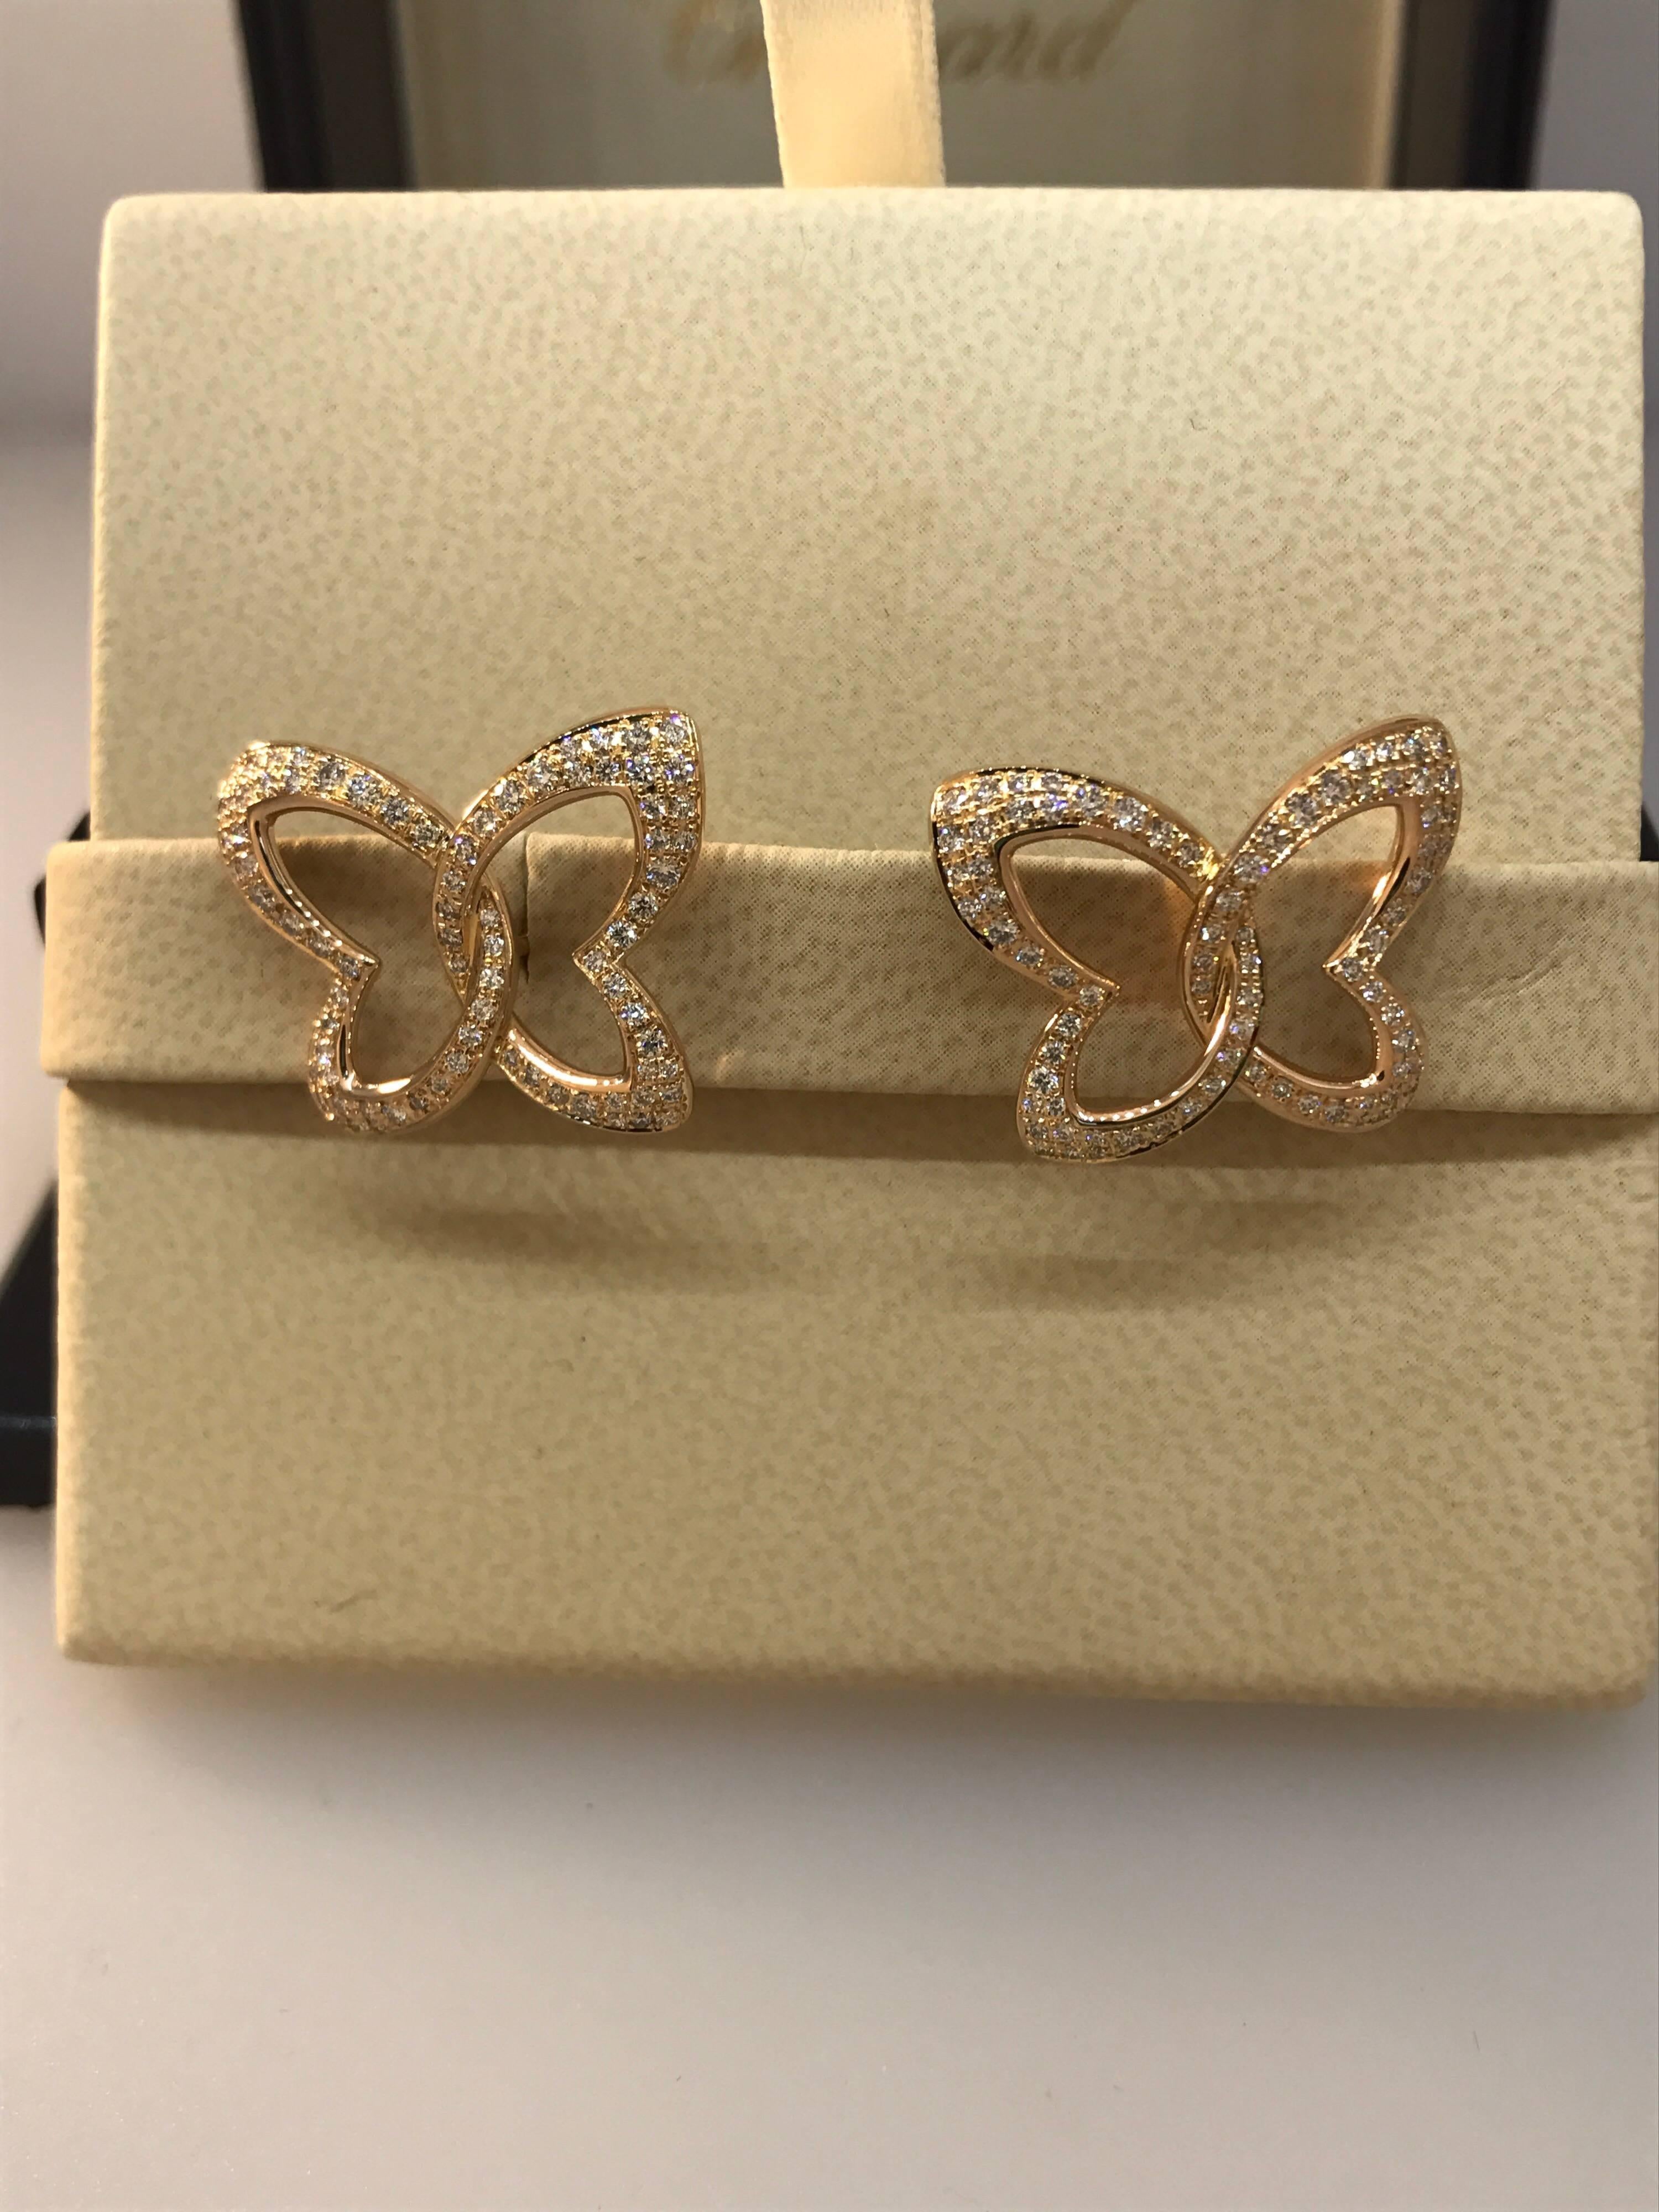 Chopard Women's 18 Karat Gold and Diamond Butterfly Stud Earrings 83/7445-5002 For Sale 1